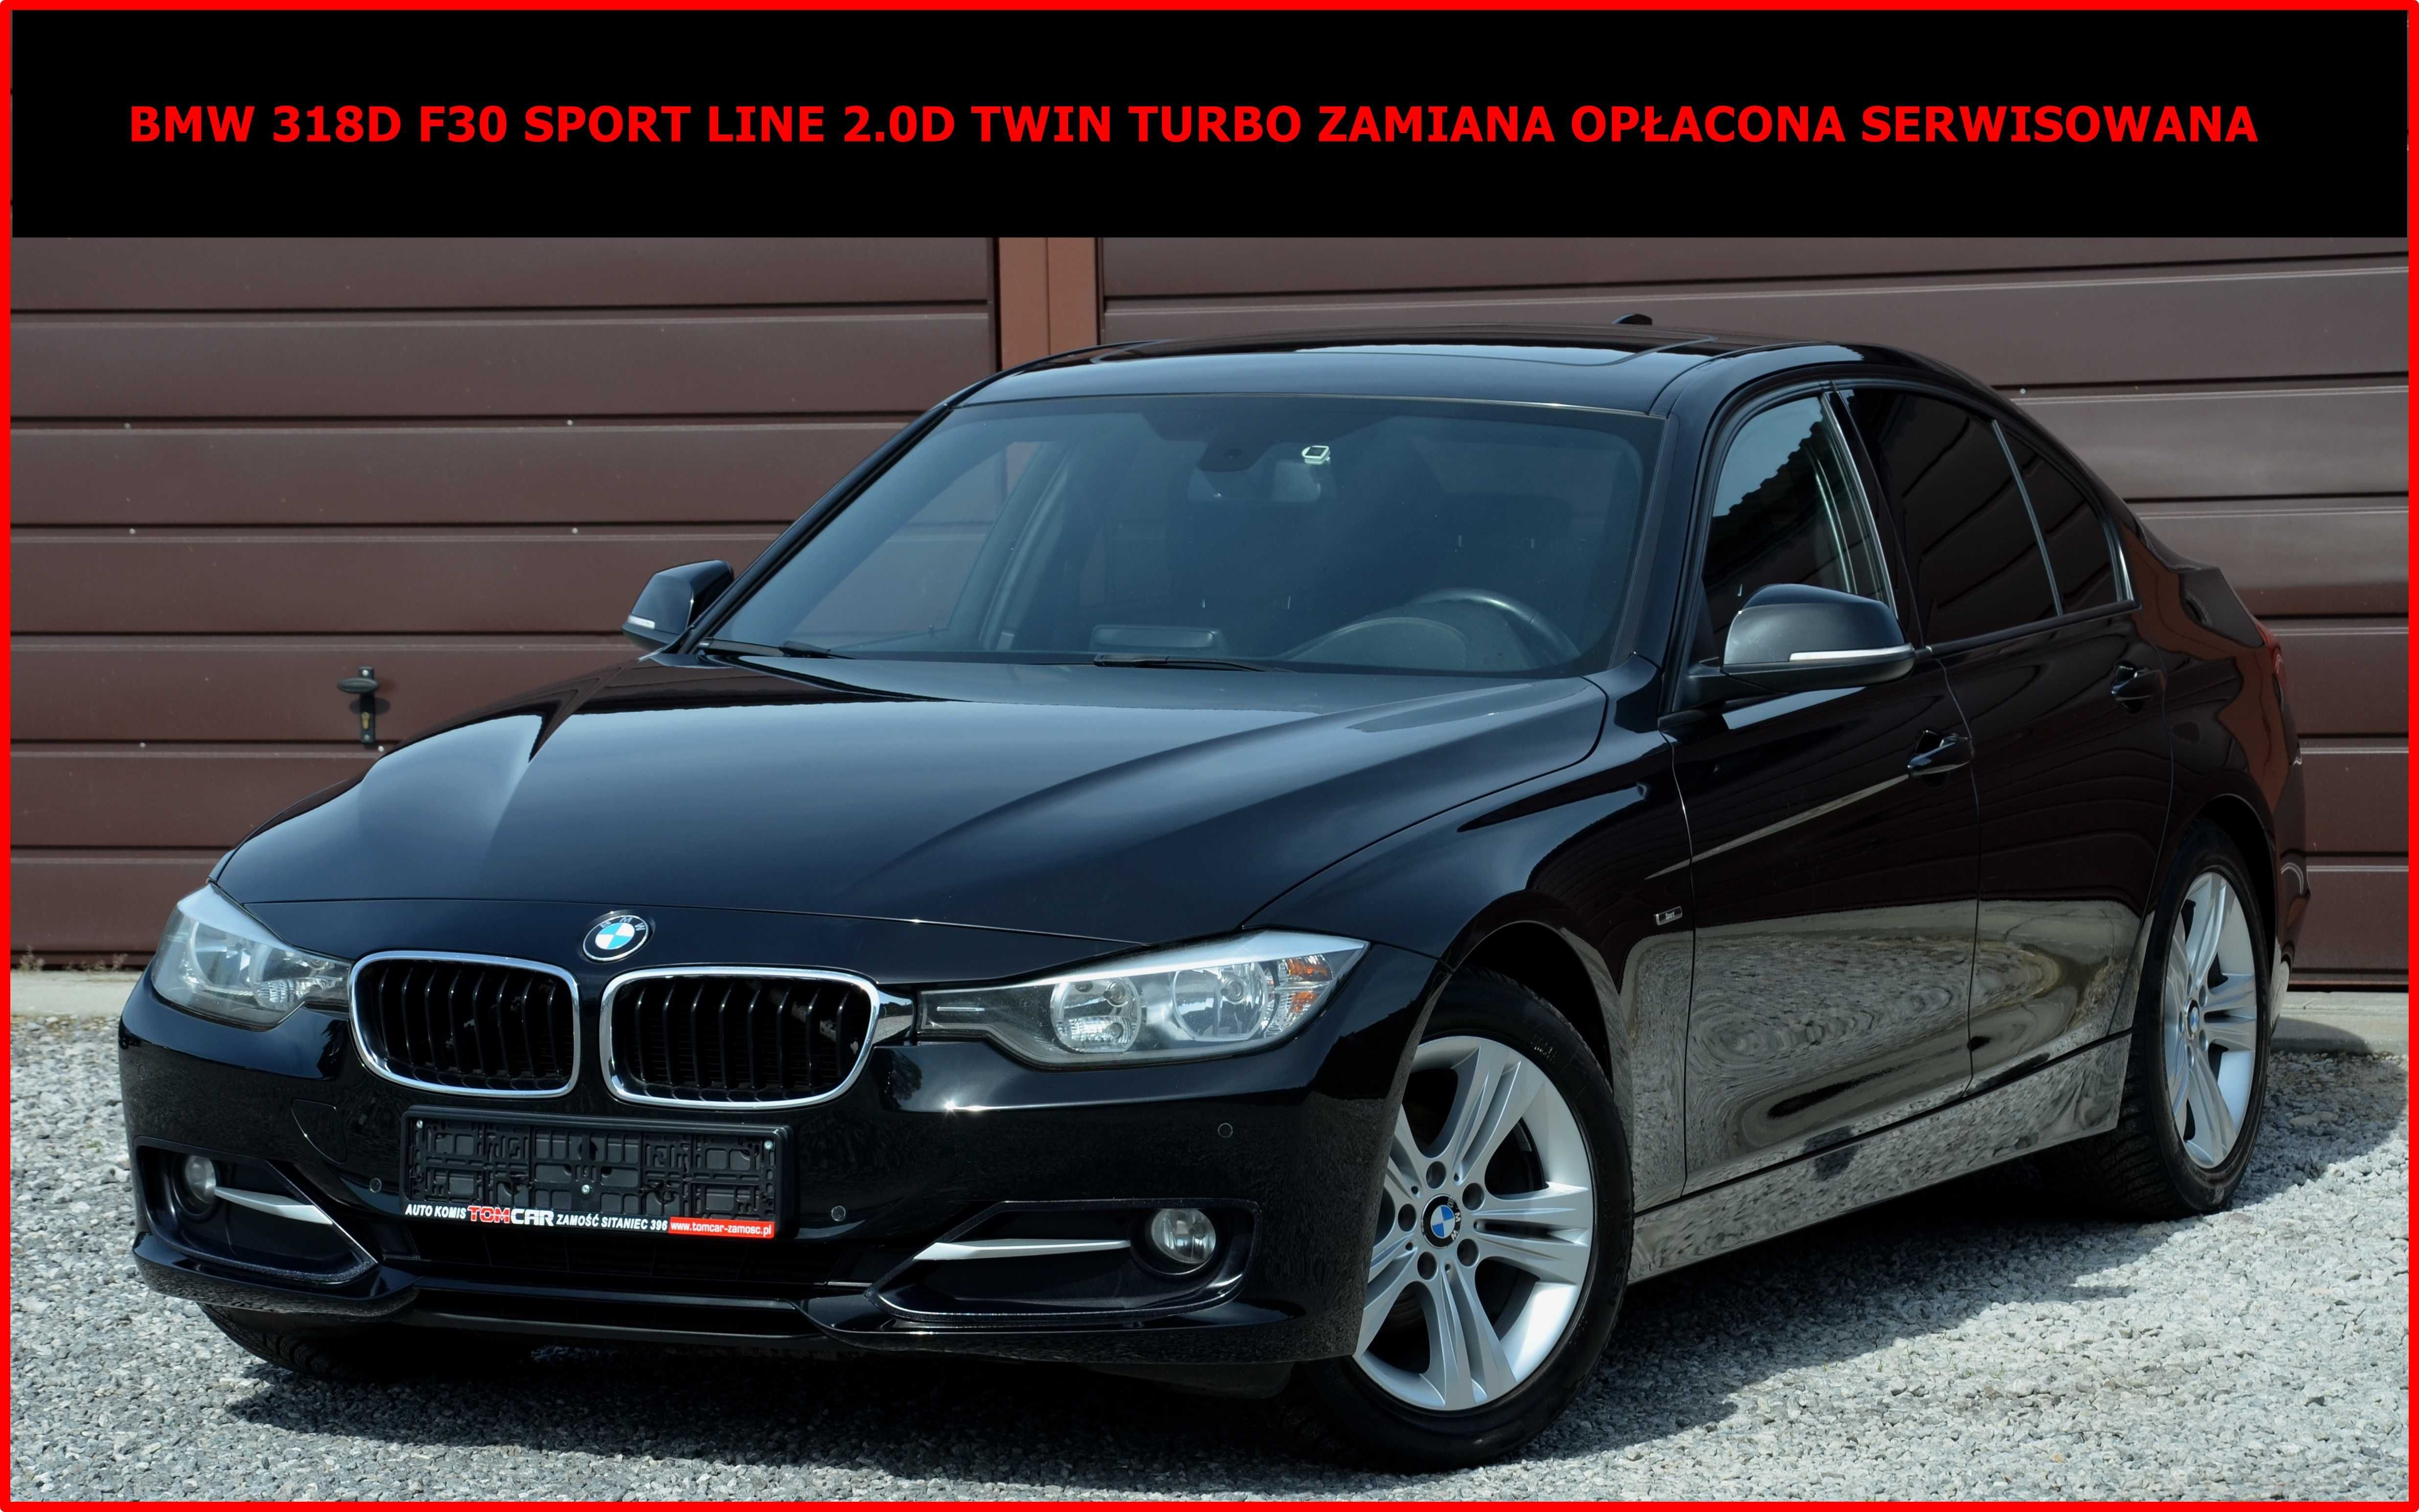 BMW 318D F30 Sport Line 2.0D Twin Power Turbo Zamiana Opłacona